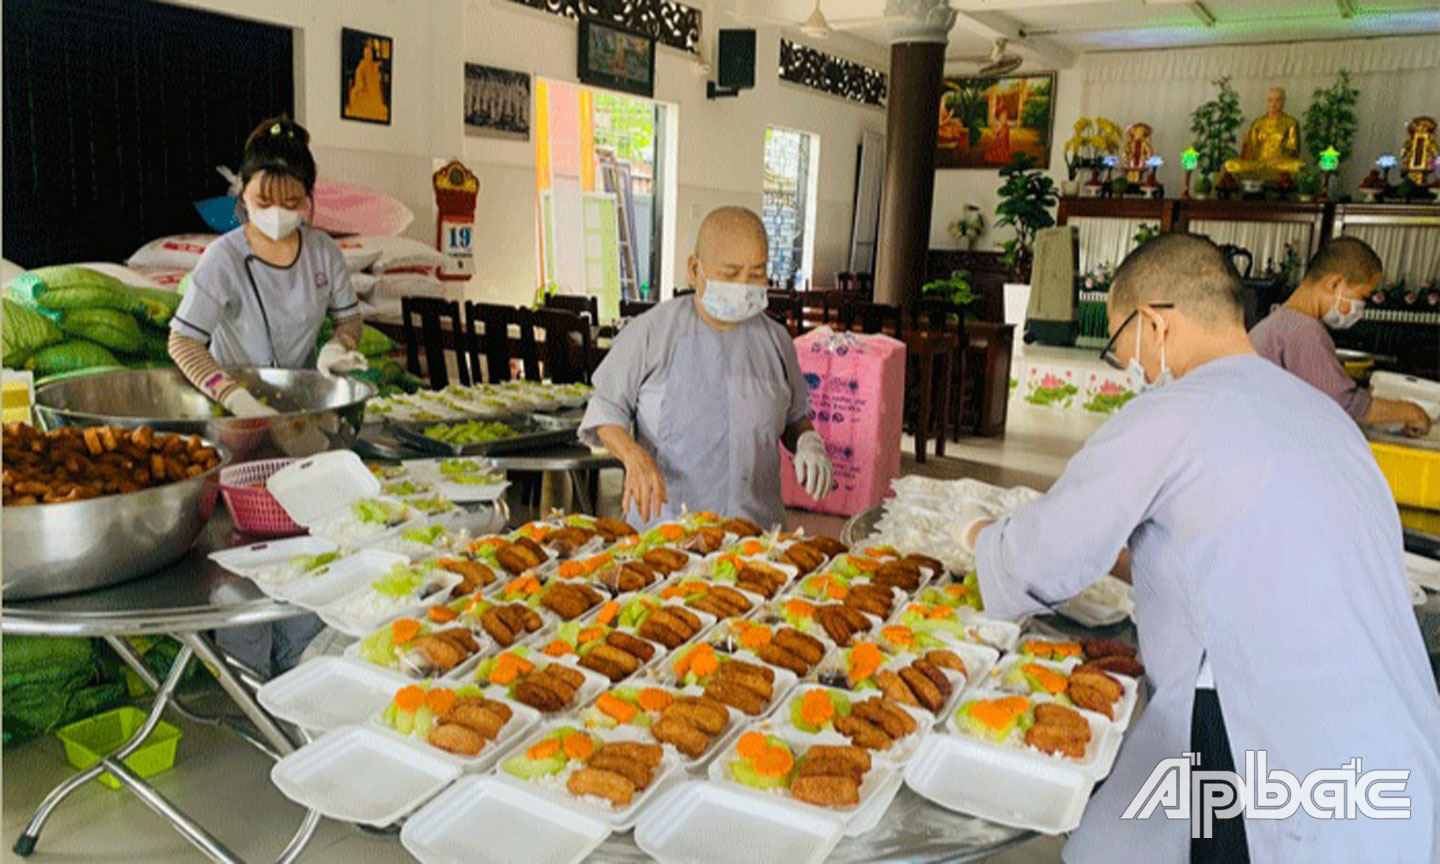 Chùa Tịnh Nghiêm là một trong rất nhiều cơ sở thờ tự Phật giáo trong tỉnh tham gia hoạt động hỗ trợ lương thực, thực phẩm cho người dân trong đại dịch Covid-19 vừa qua.